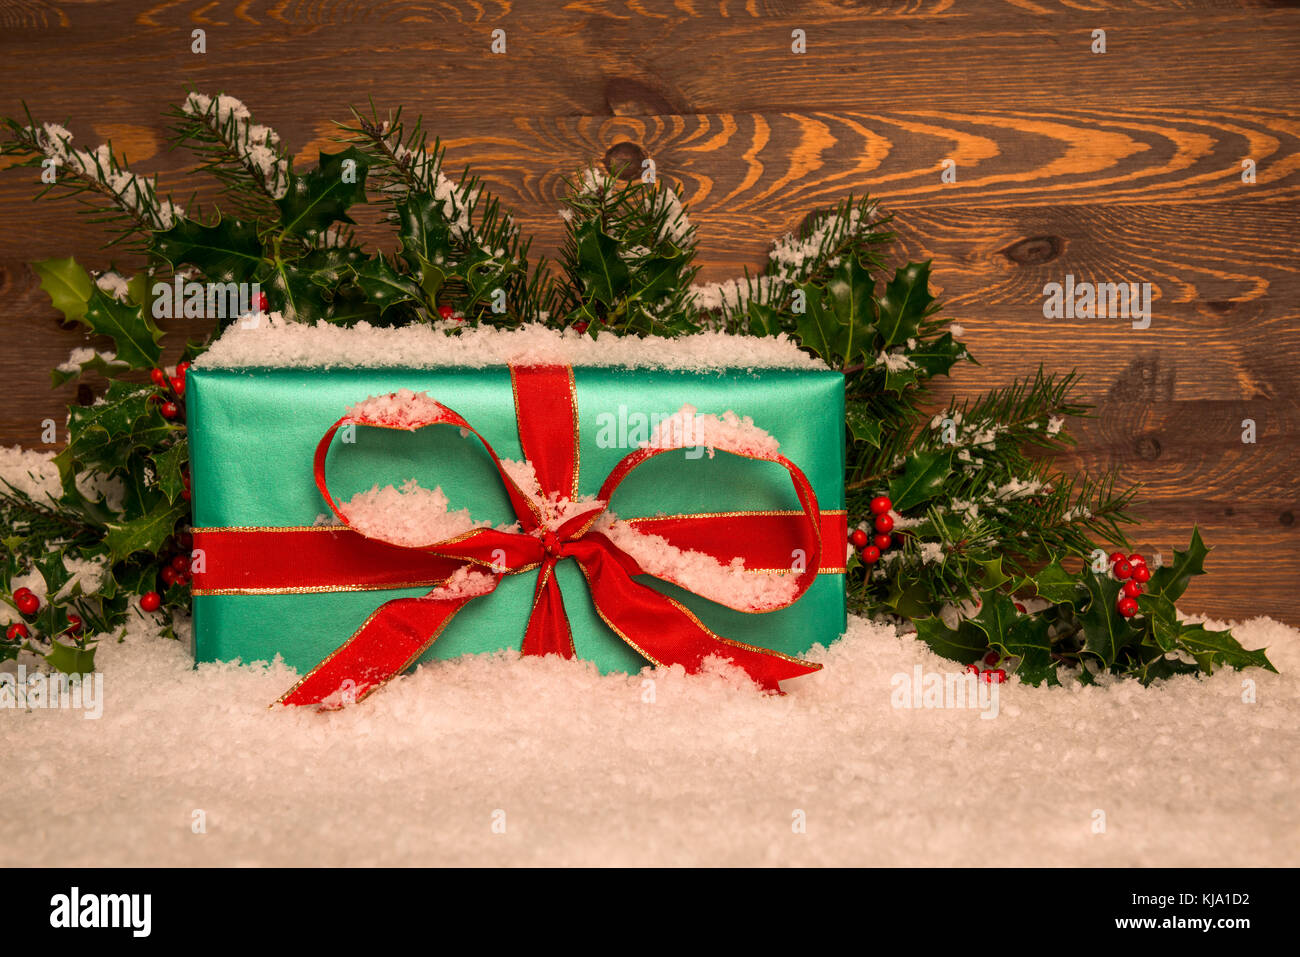 Weihnachtsgeschenk Geschenk im Grünbuch mit roter Schleife verpackt mit Stechpalme und Schnee gegen eine Holz- Hintergrund, kopieren Sie Platz für Ihre Nachricht. Stockfoto